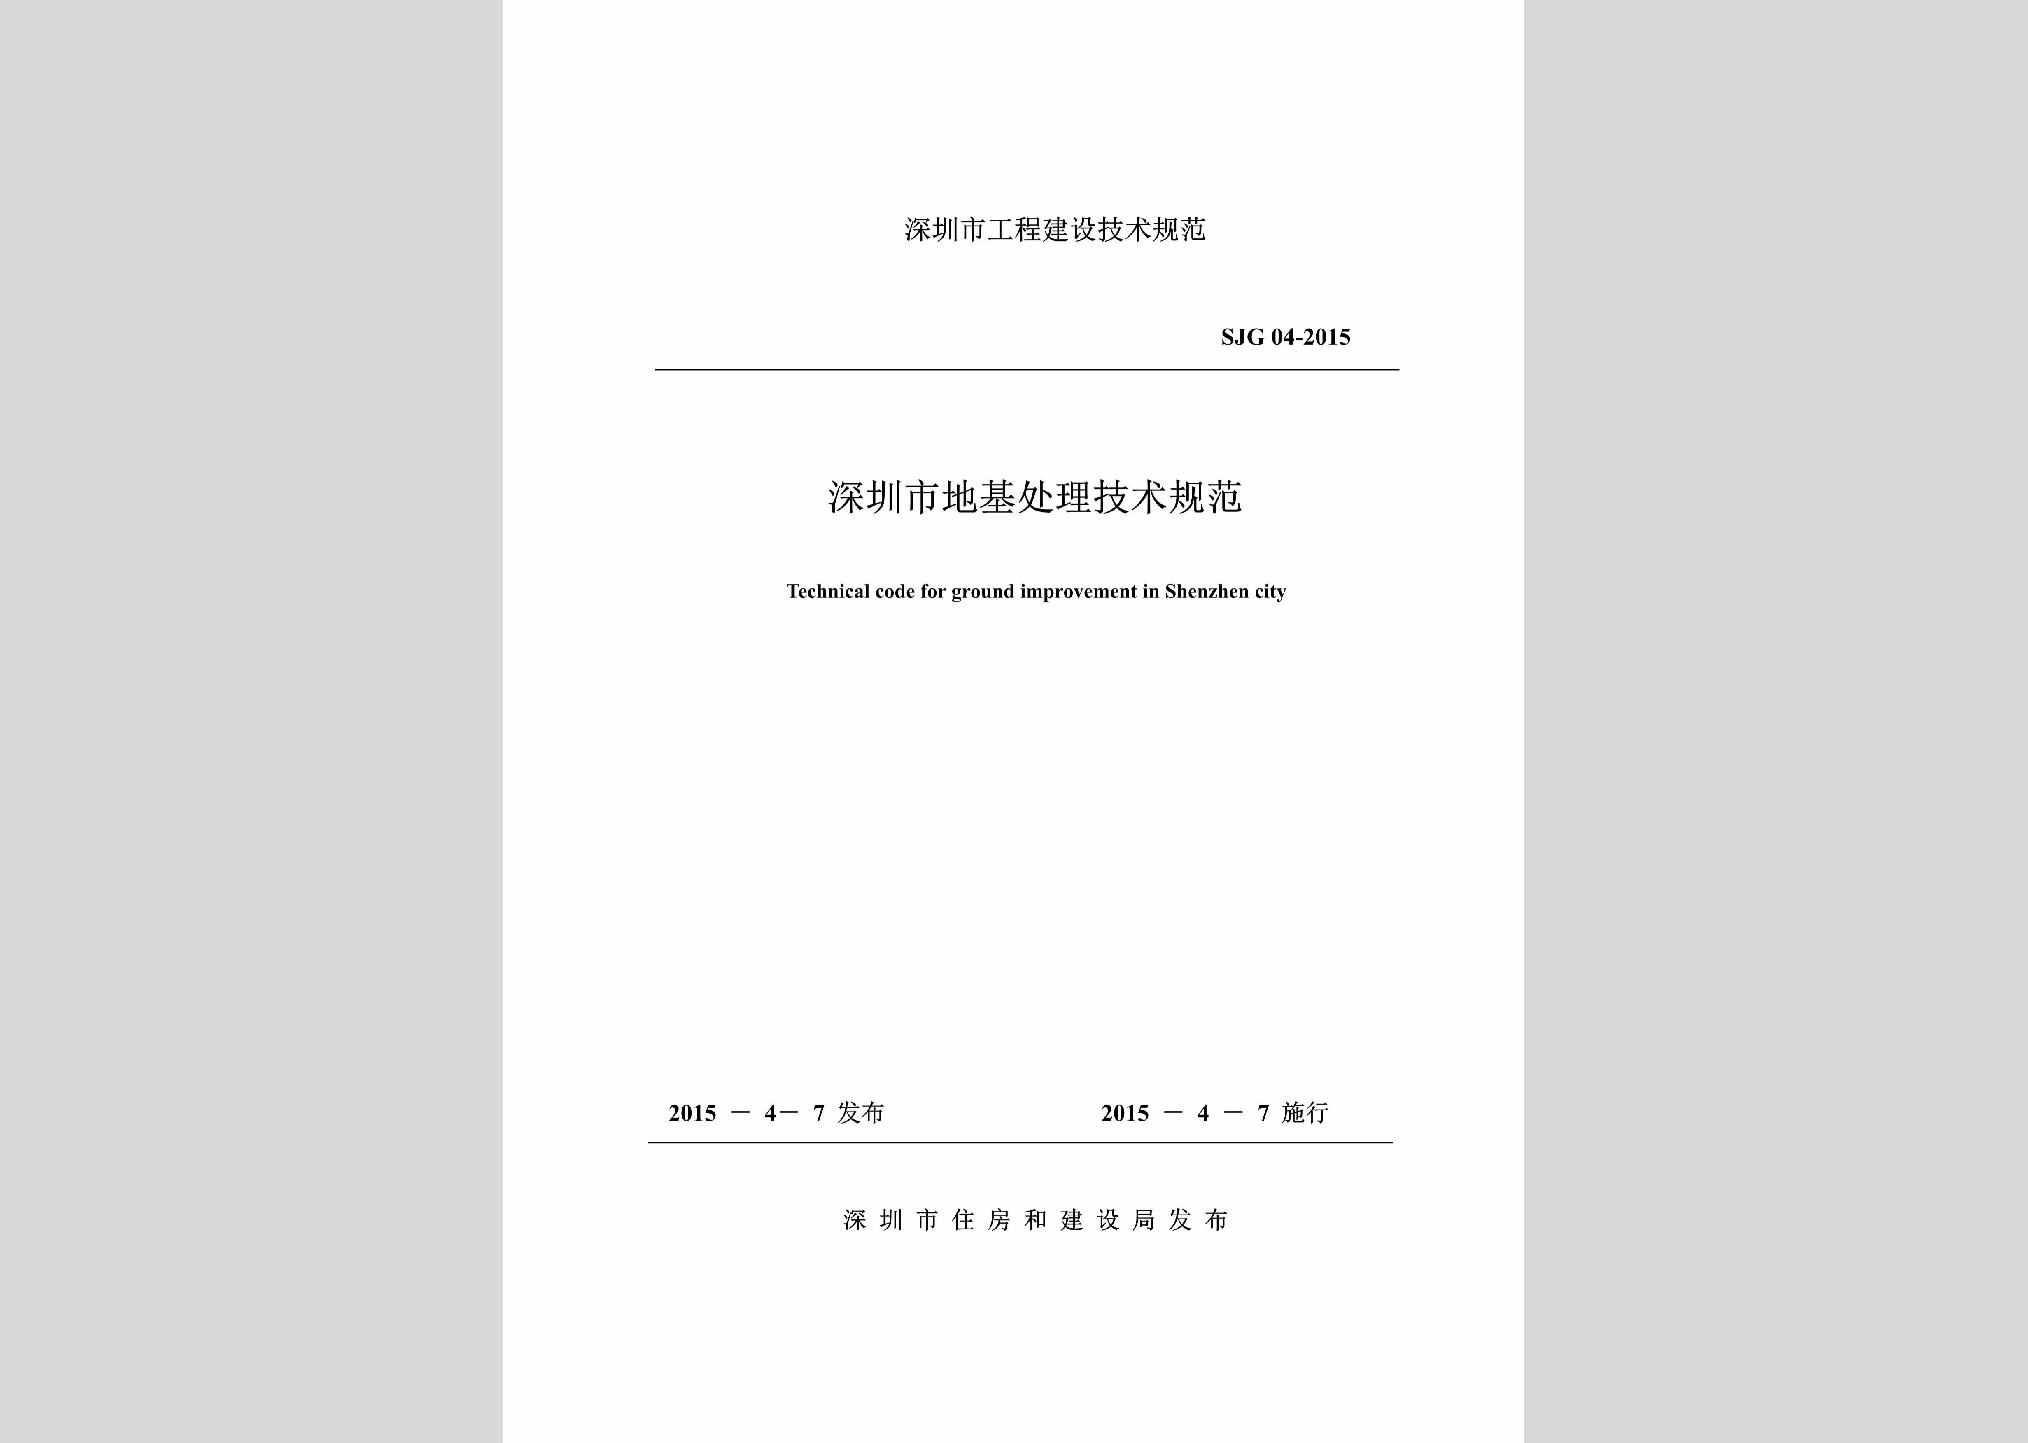 SJG04-2015：深圳市地基处理技术规范